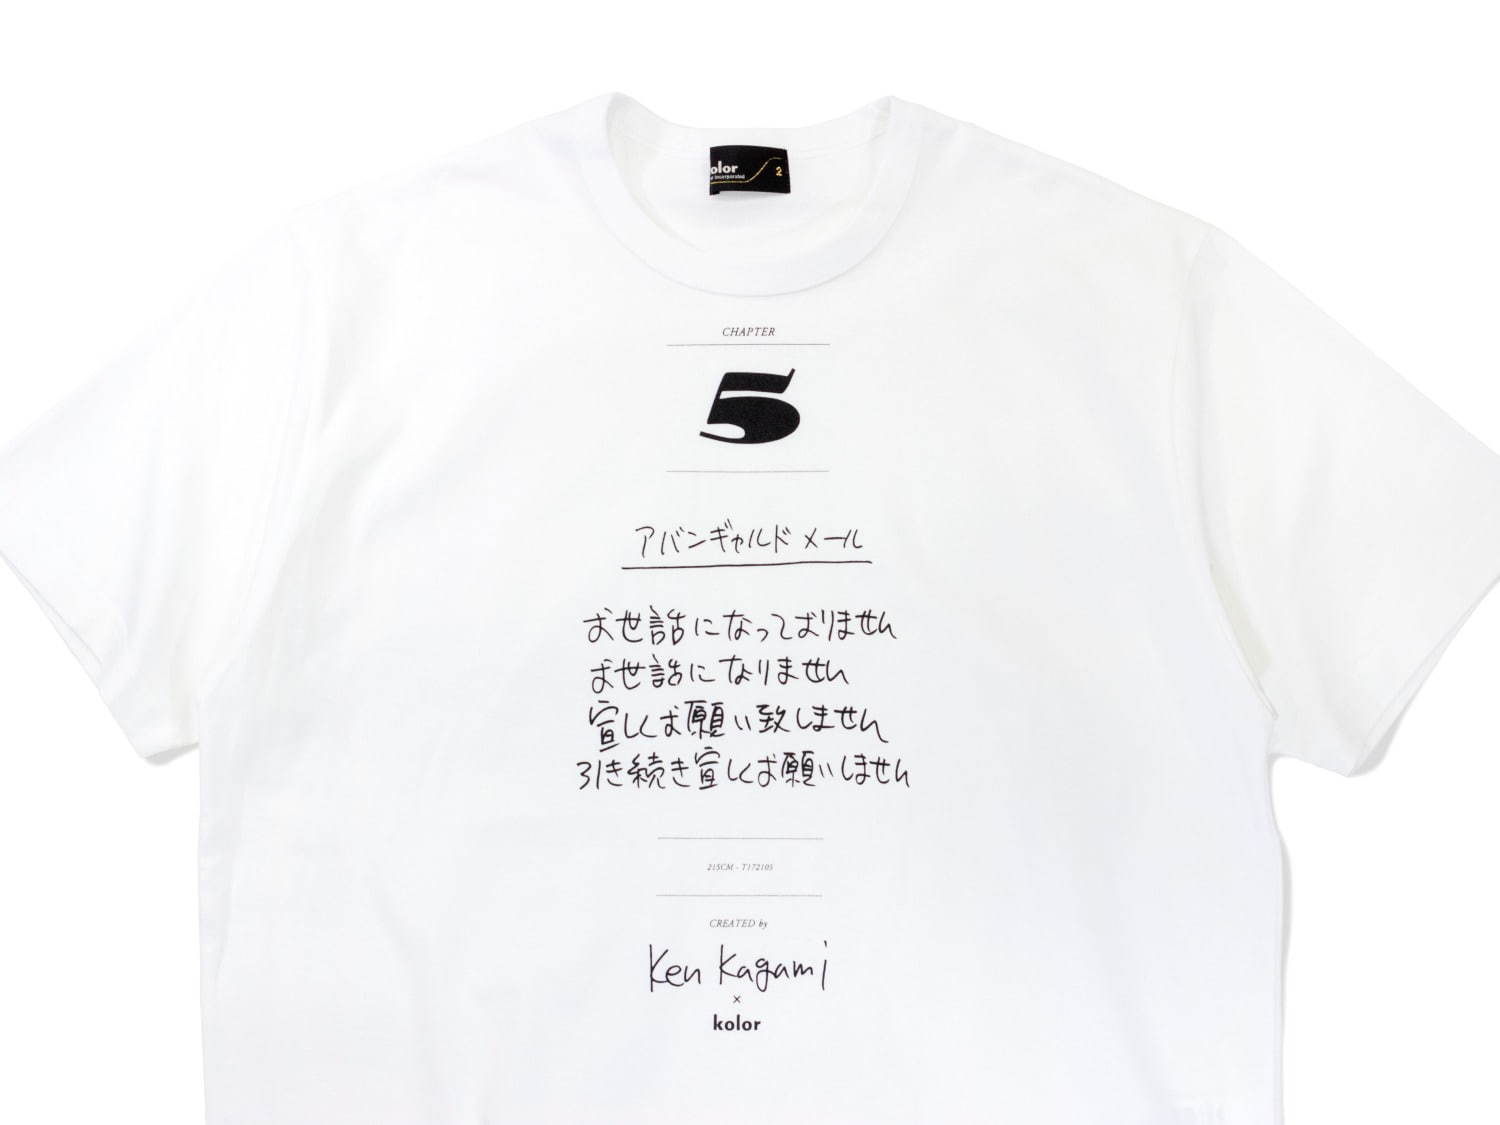 カラー 加賀美健のコラボtシャツ第2弾 アバンギャルド早口言葉 などユニークなメッセージ ファッションプレス